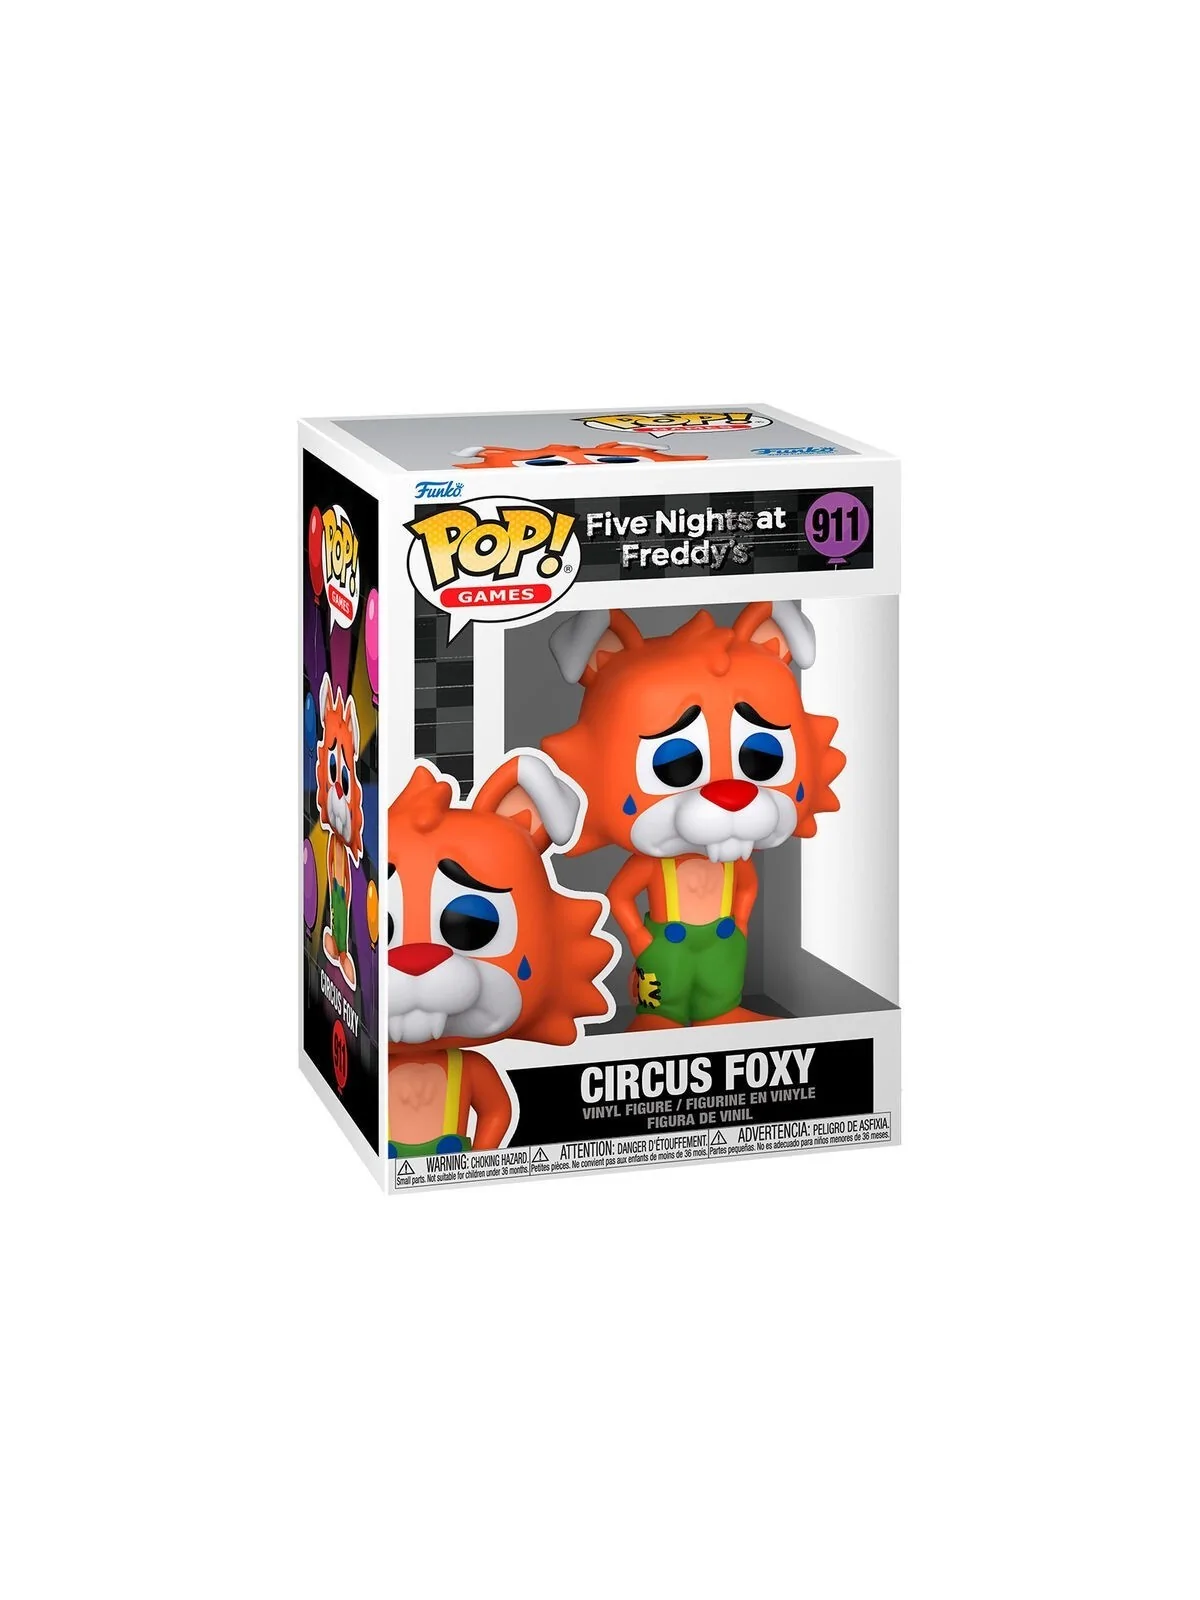 Comprar Funko POP! Five Nights at Freddys: Circus Foxy (911) barato al